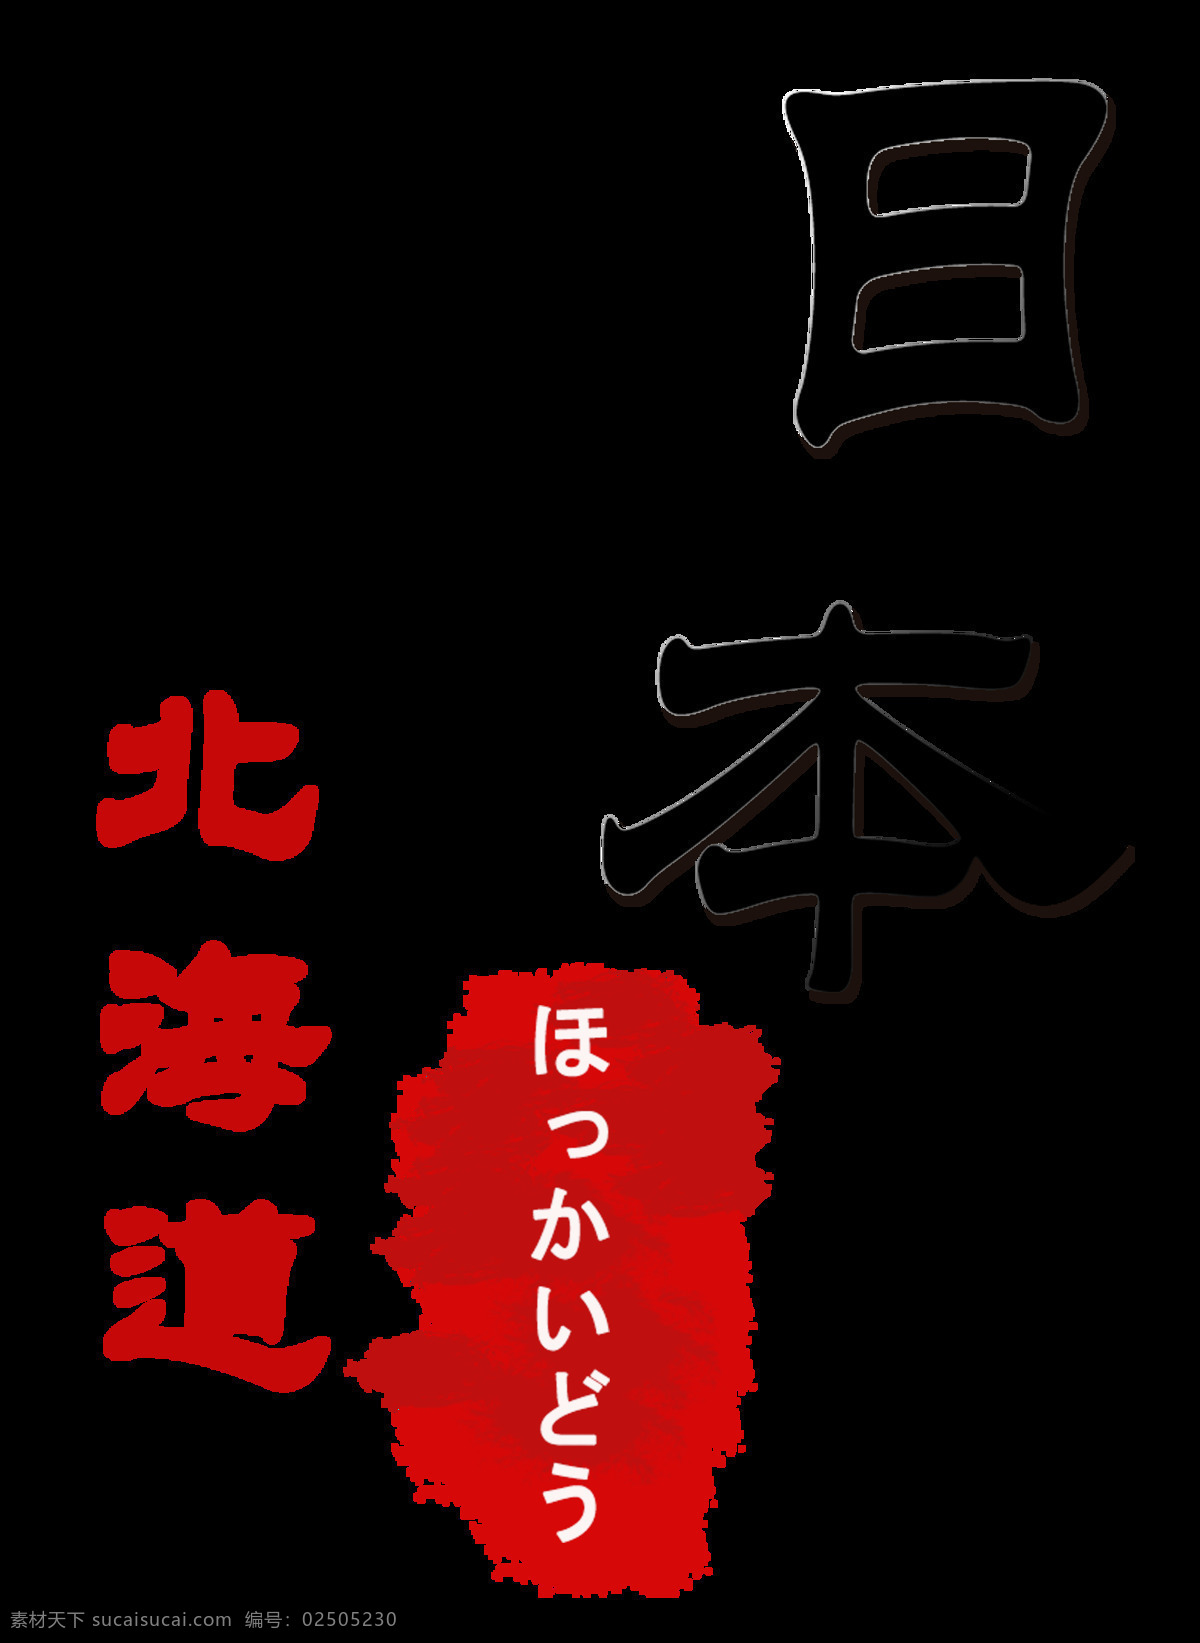 清新 简约 红色 印章 日本旅游 装饰 元素 汉字 红色纹理 简约风格 日文 装饰元素